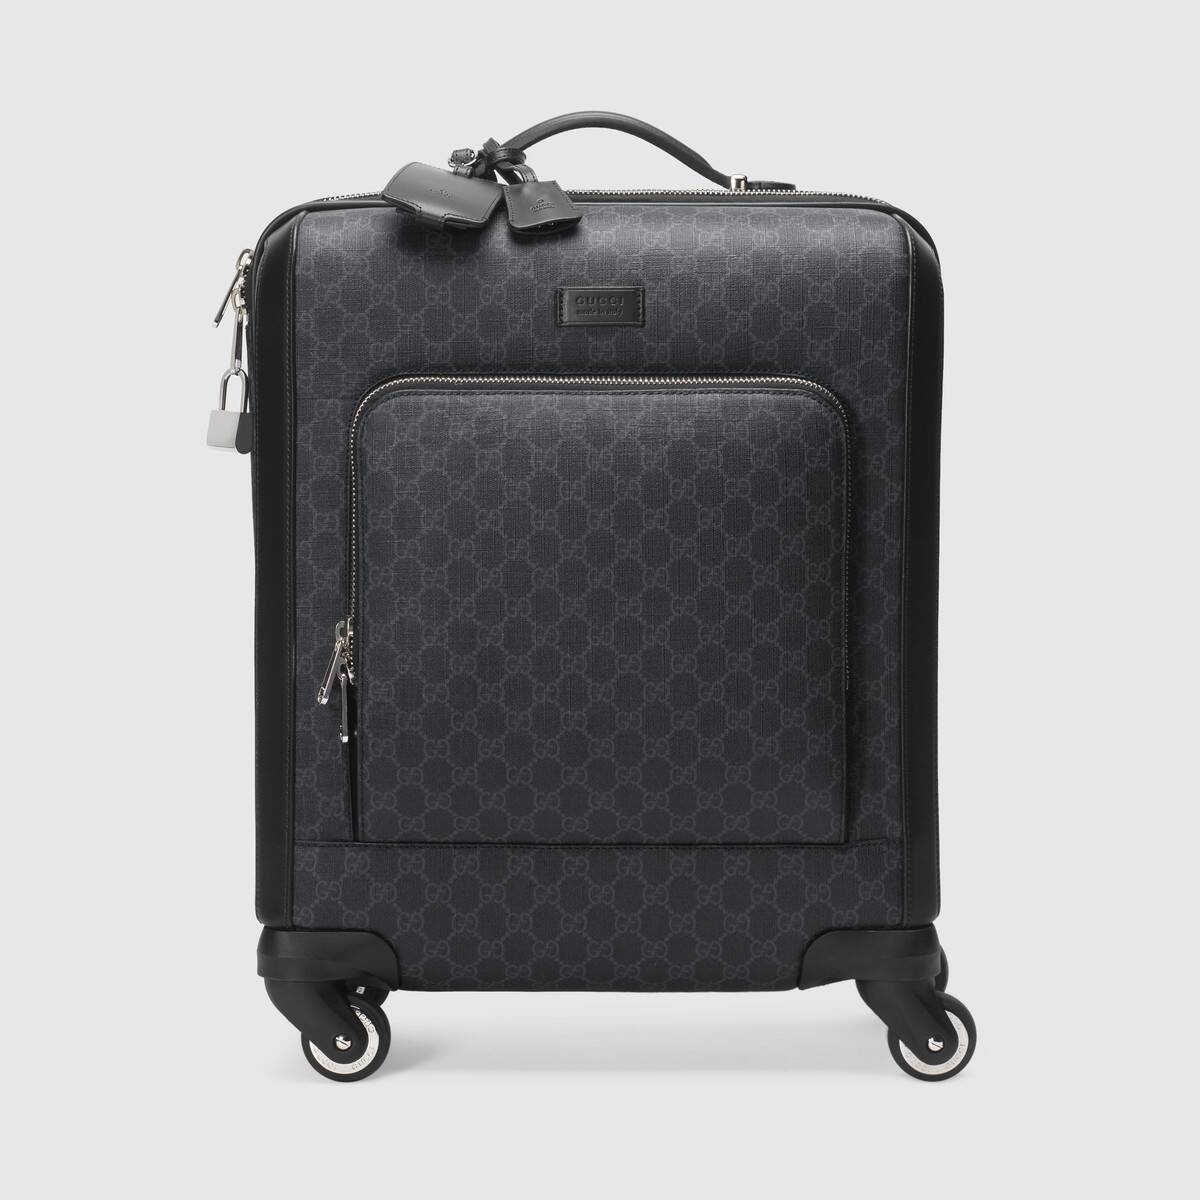 Gran Turismo GG Supreme suitcase - 1